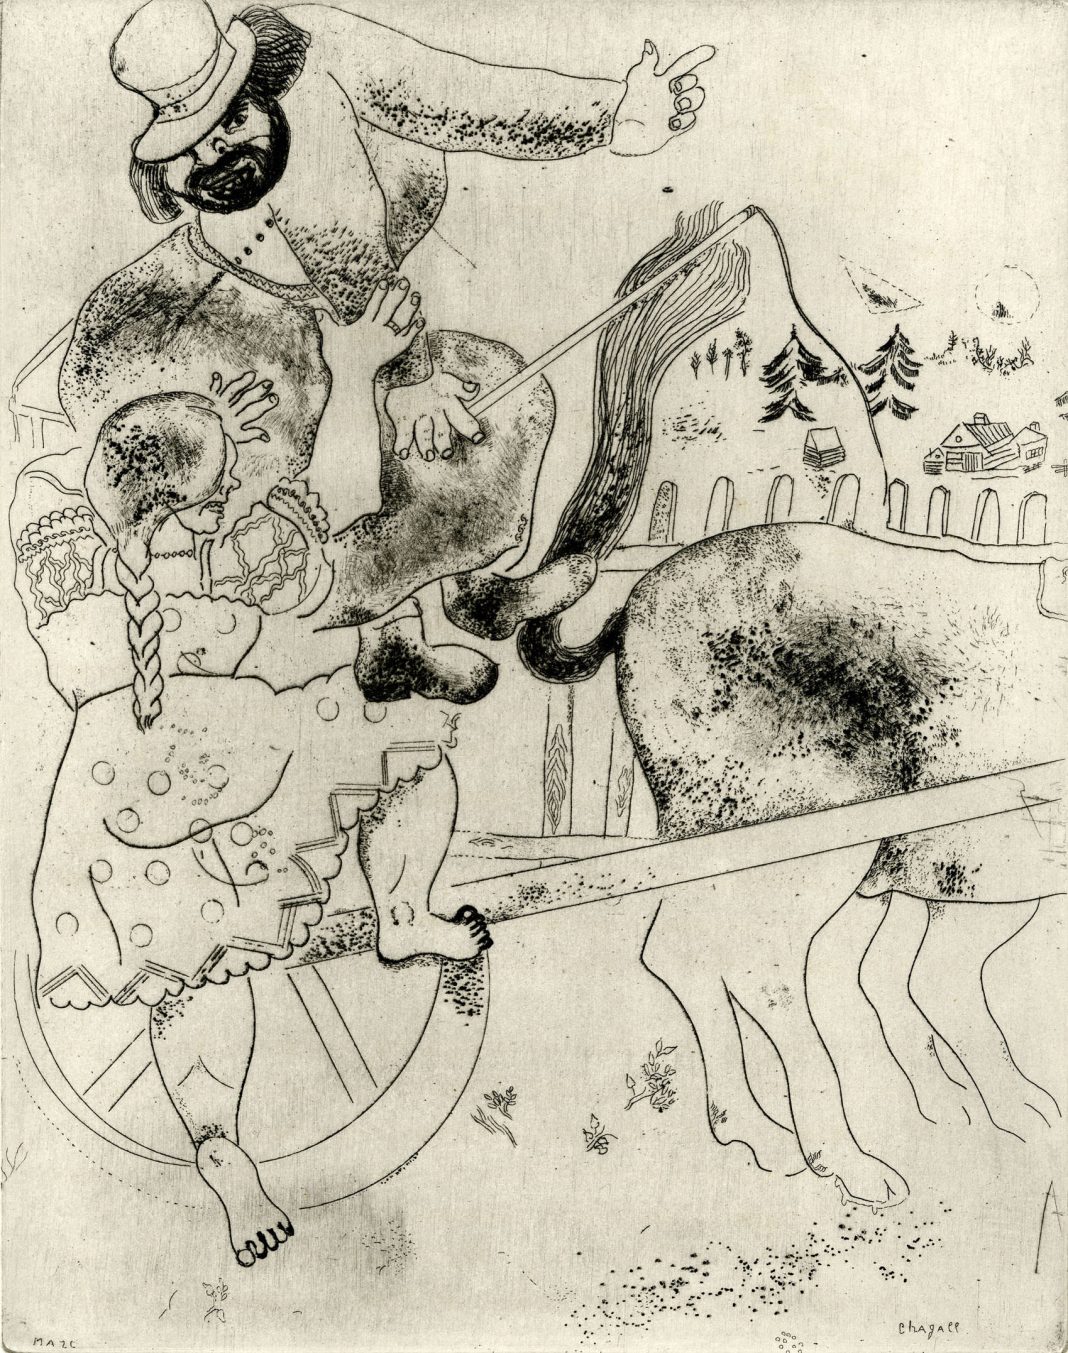 Il villaggio di Chagall. Cento incisioni da ‘Le Anime Morte’https://www.exibart.com/repository/media/eventi/2016/09/il-villaggio-di-chagall.-cento-incisioni-da-8216le-anime-morte8217-1068x1353.jpg